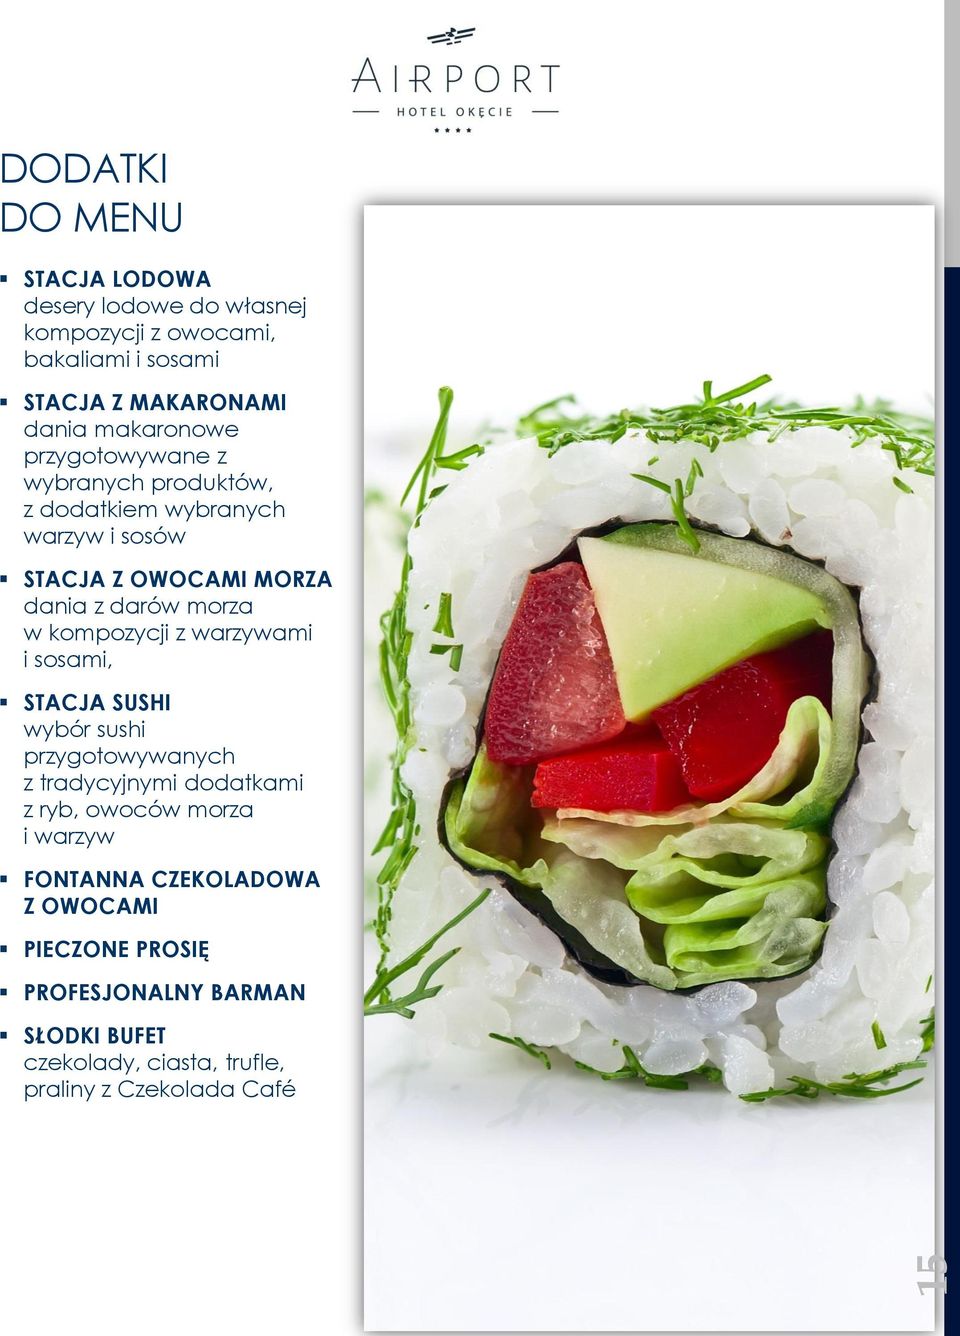 w kompozycji z warzywami i sosami, STACJA SUSHI wybór sushi przygotowywanych z tradycyjnymi dodatkami z ryb, owoców morza i